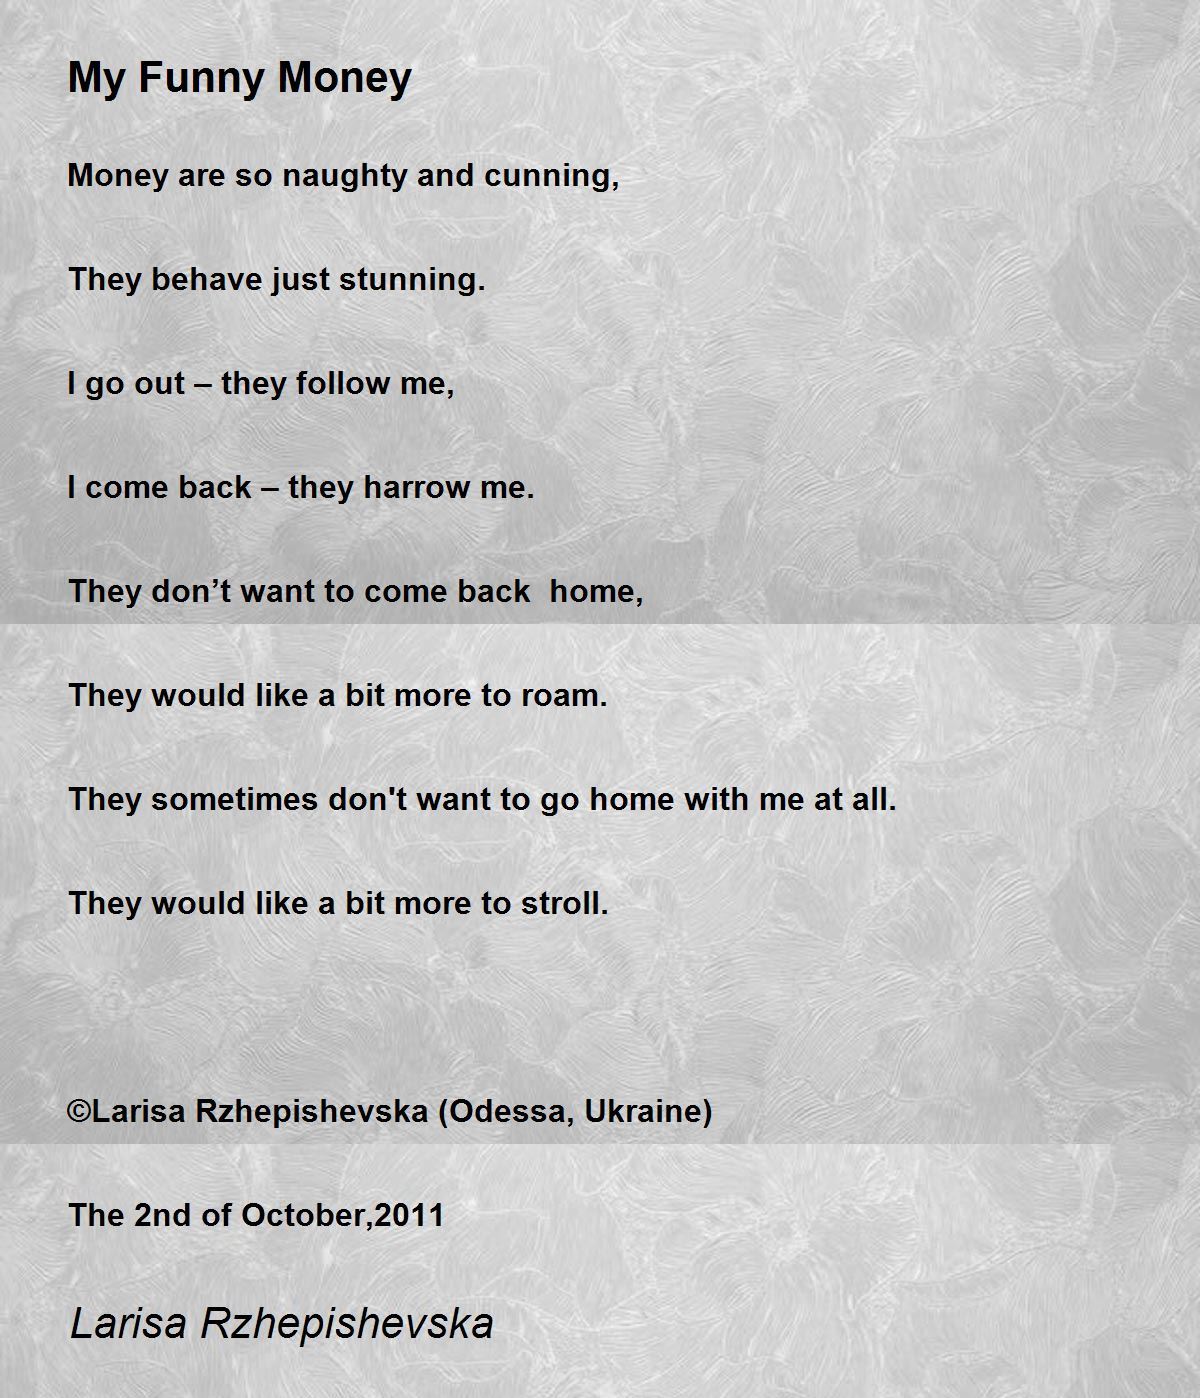 My Funny Money - My Funny Money Poem by Larisa Rzhepishevska